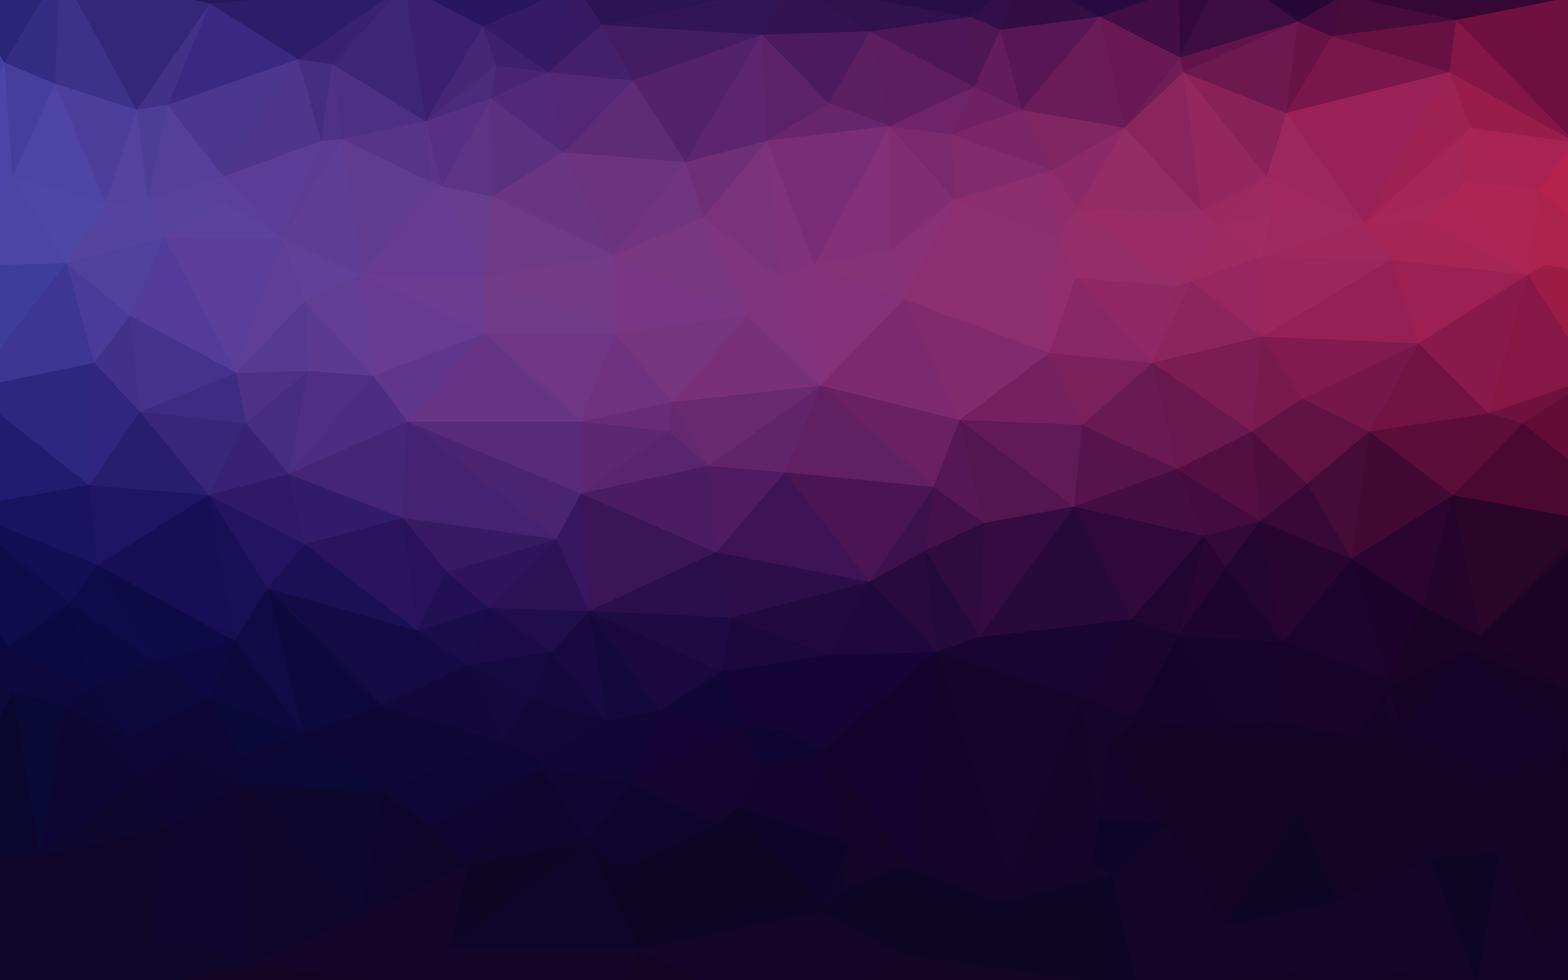 Fondo polivinílico bajo triangular arrugado geométrico abstracto violeta púrpura del gráfico del ejemplo de la pendiente del estilo. Vector de diseño poligonal para su negocio.